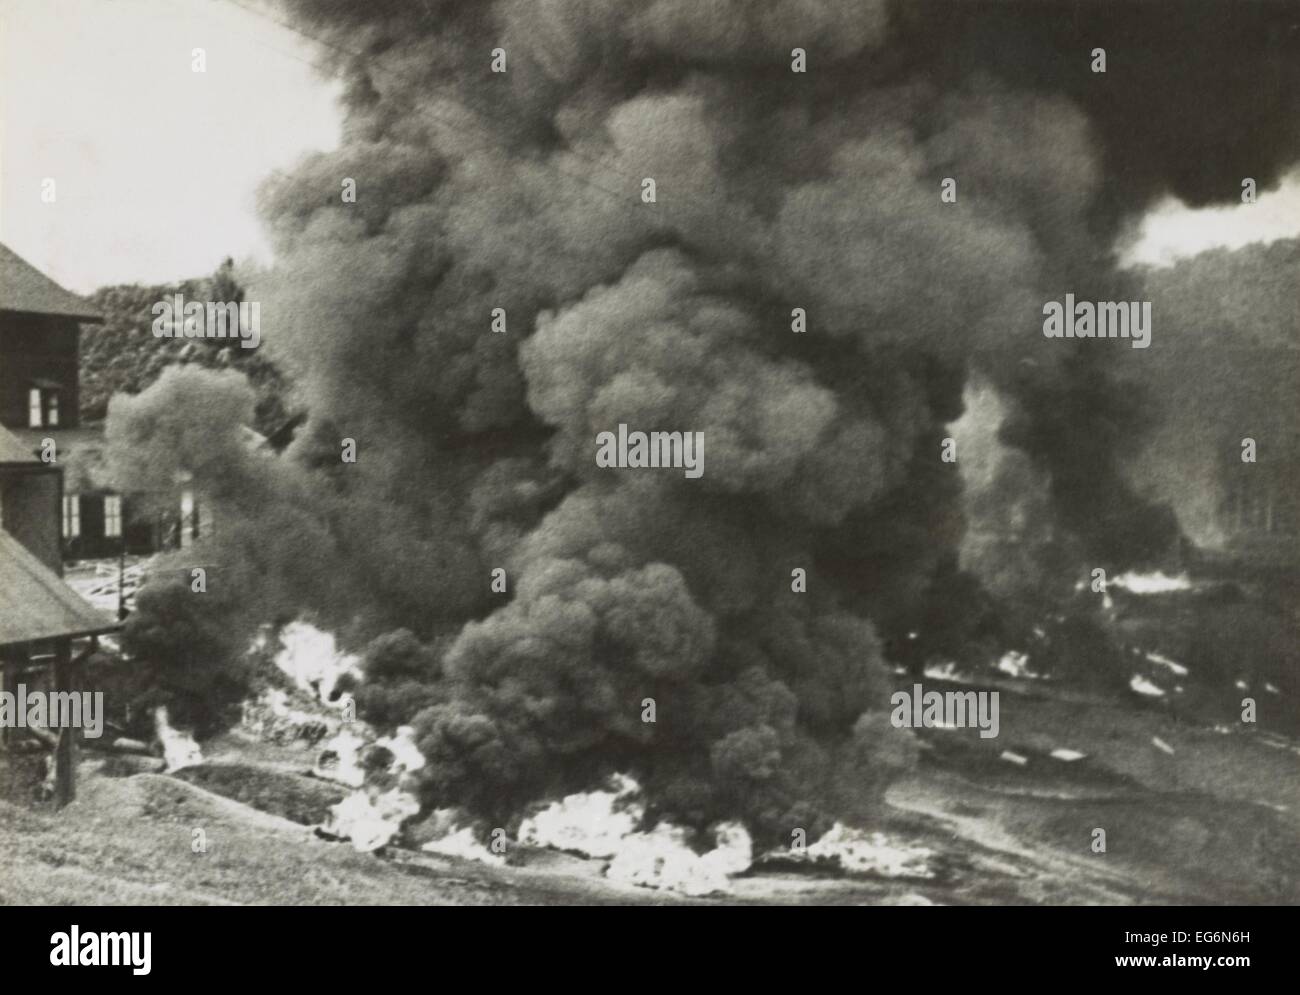 Rauch steigt aus einer Gummifabrik, zerstört von den sich zurückziehenden britischen Streitkräften in Malaya. Tausende von Ballen aus Kautschuk und Stockfoto